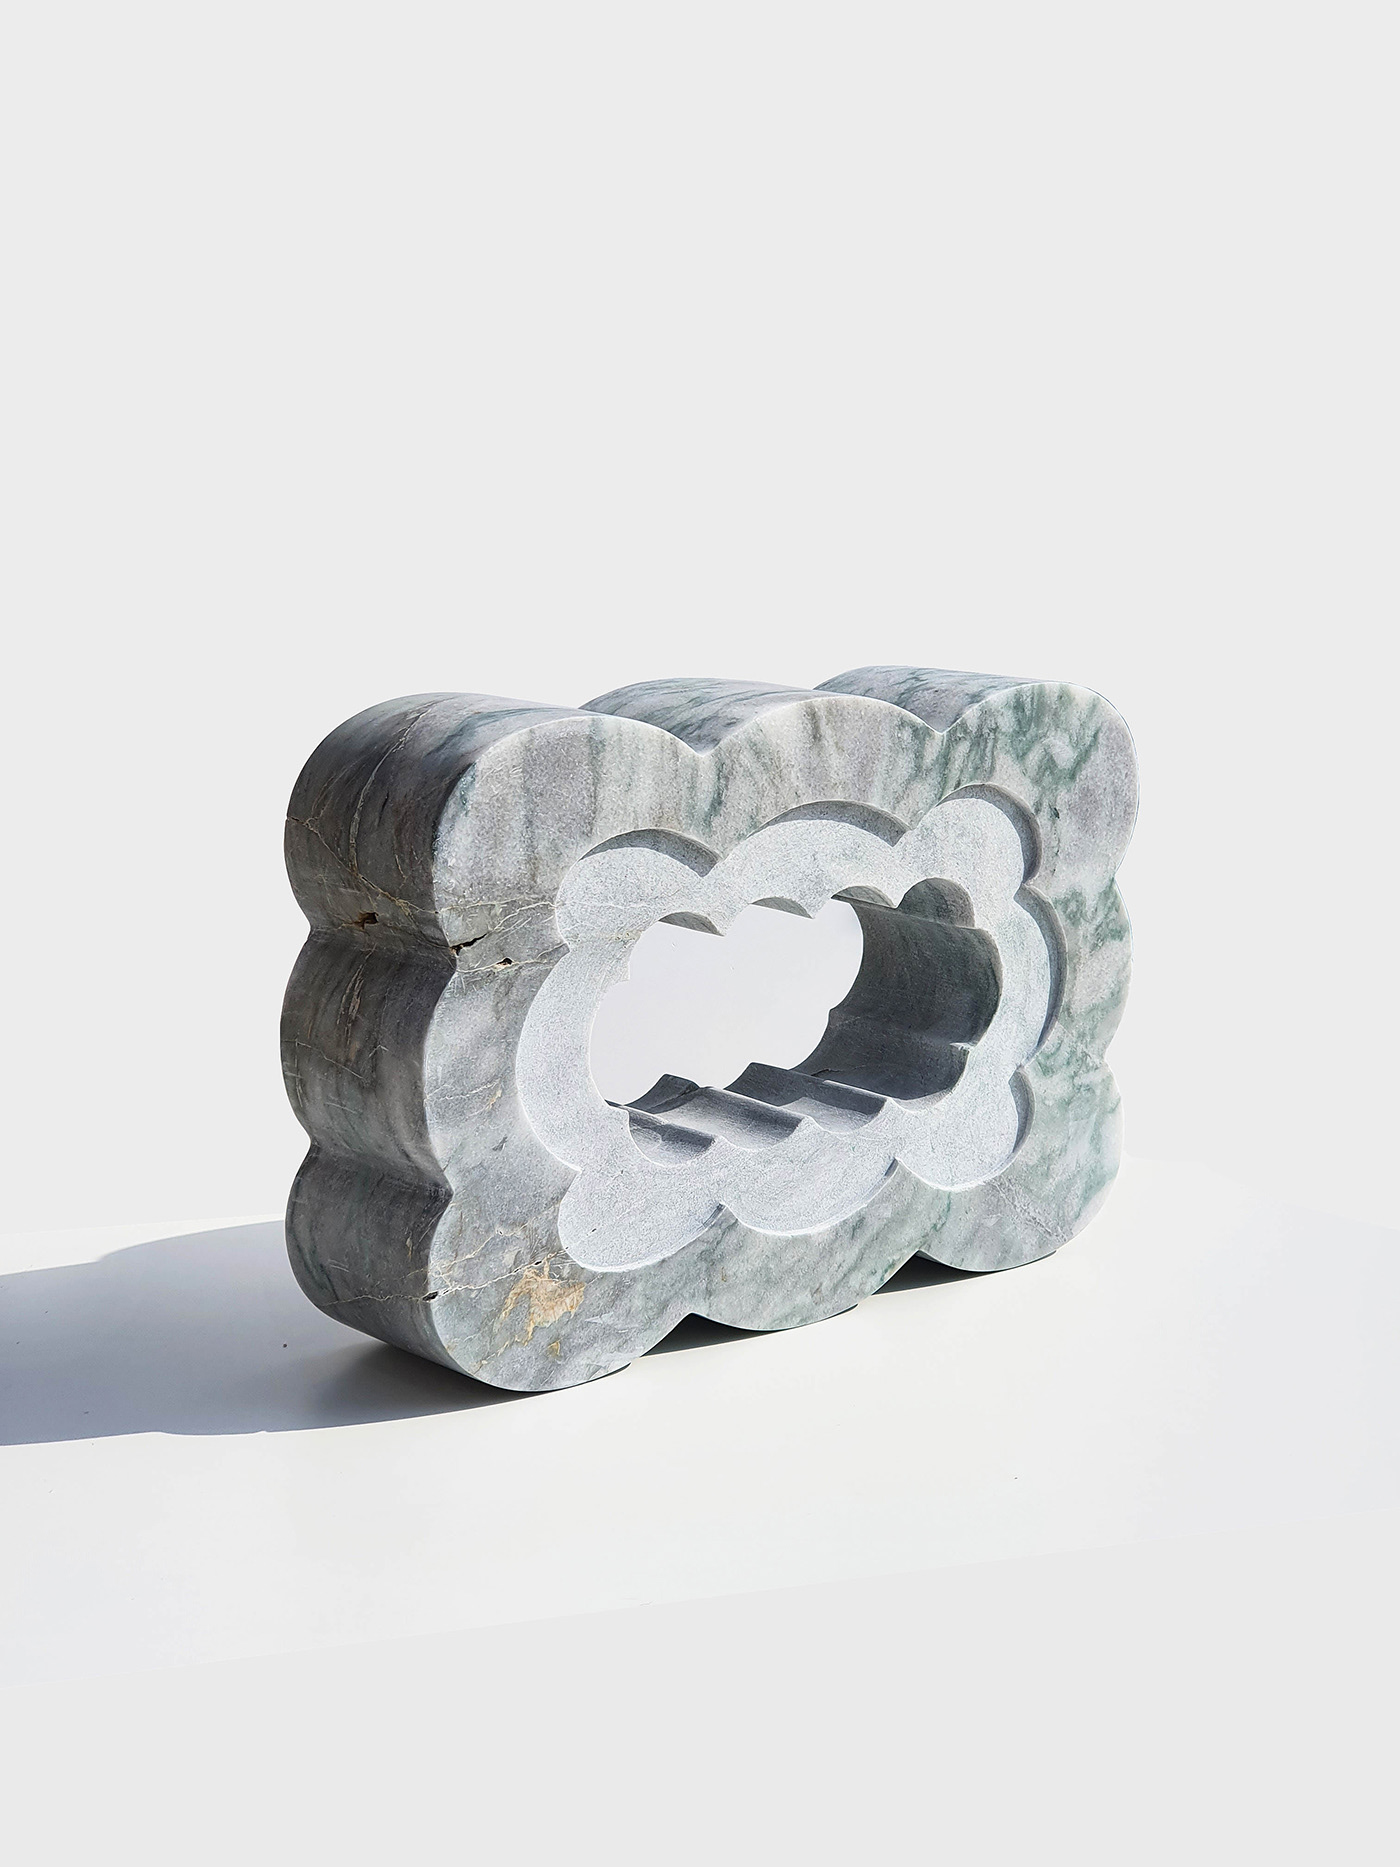 sculpture Marble Modernart abstractart carving contemporarysculpture